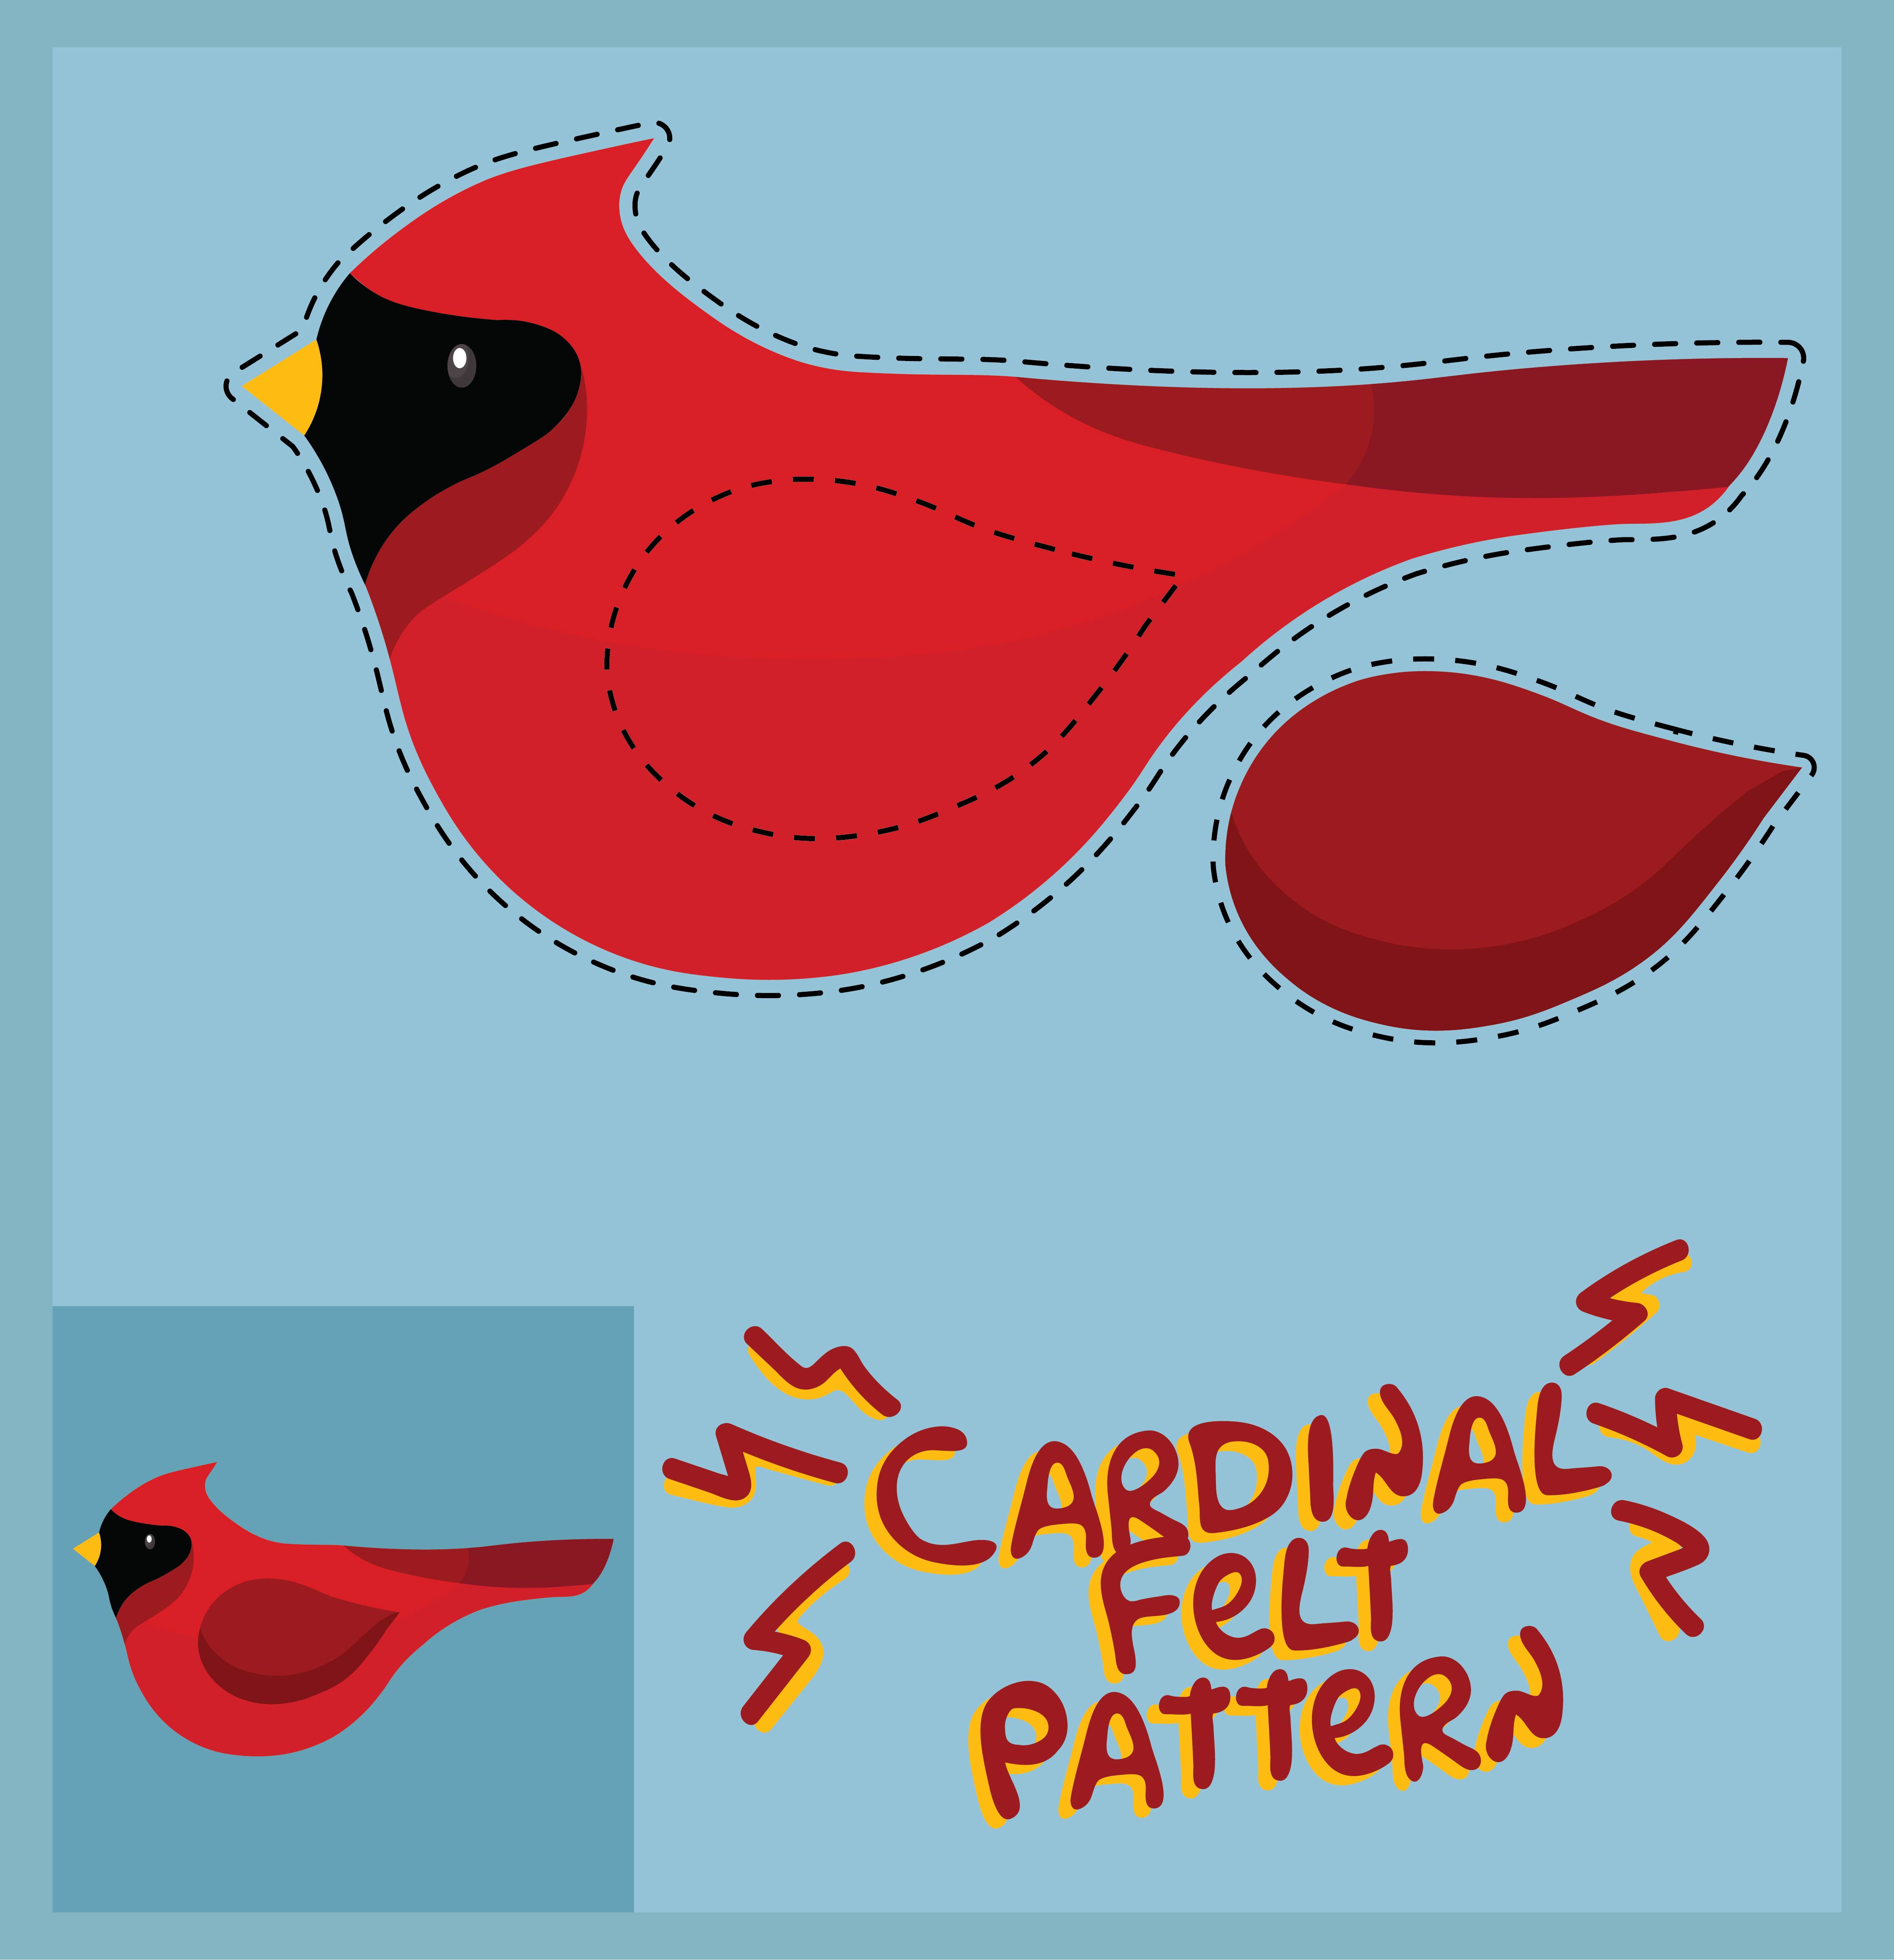 Cardinal Bird Felt Patterns Free